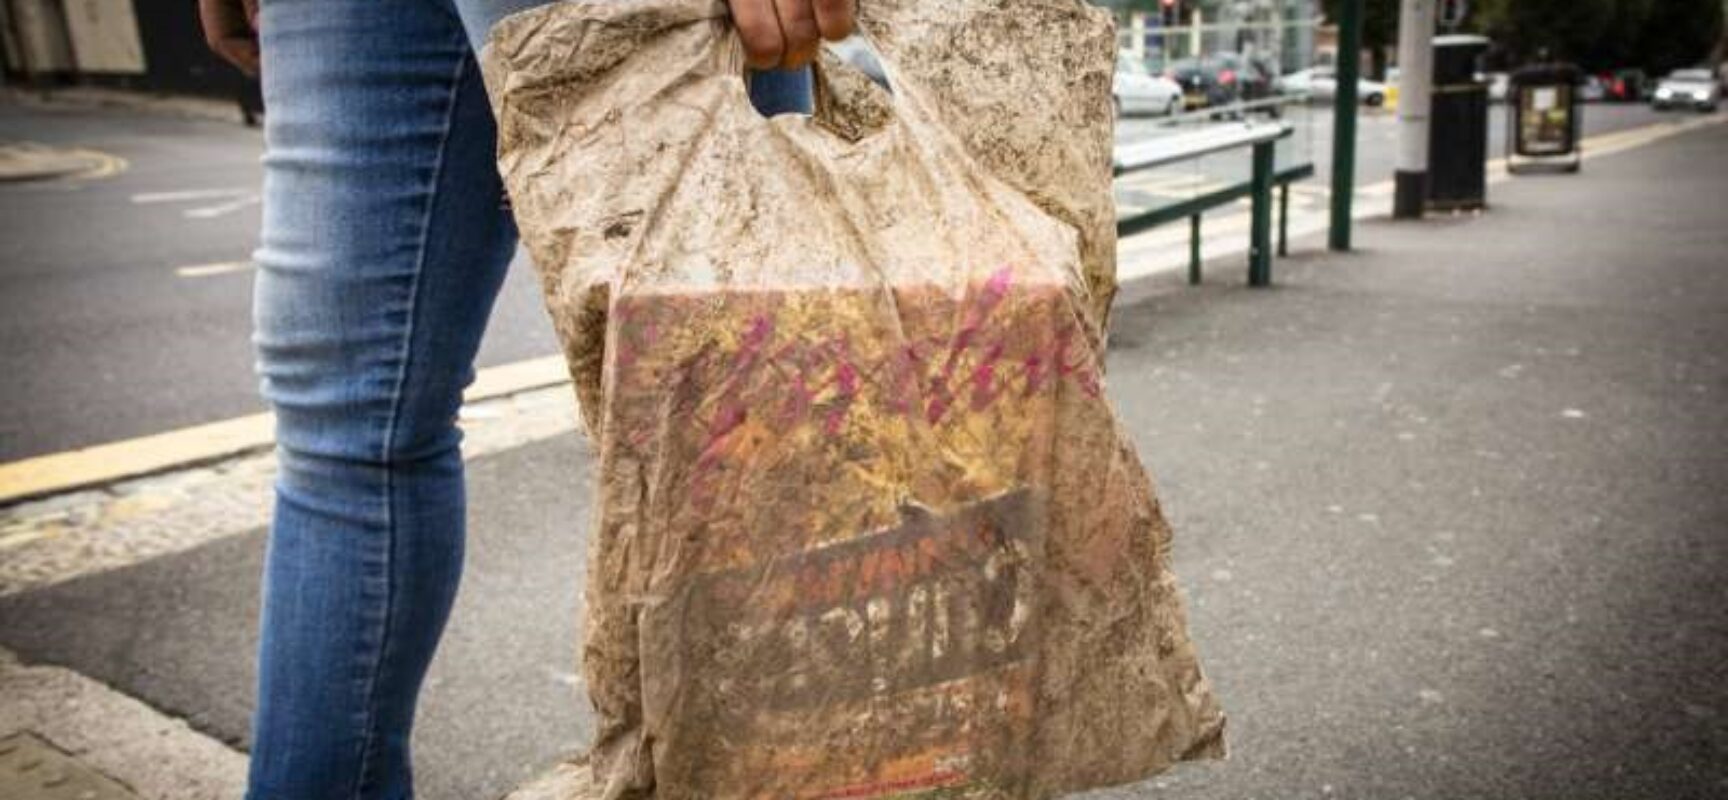 Municípios podem exigir utilização de sacolas biodegradáveis